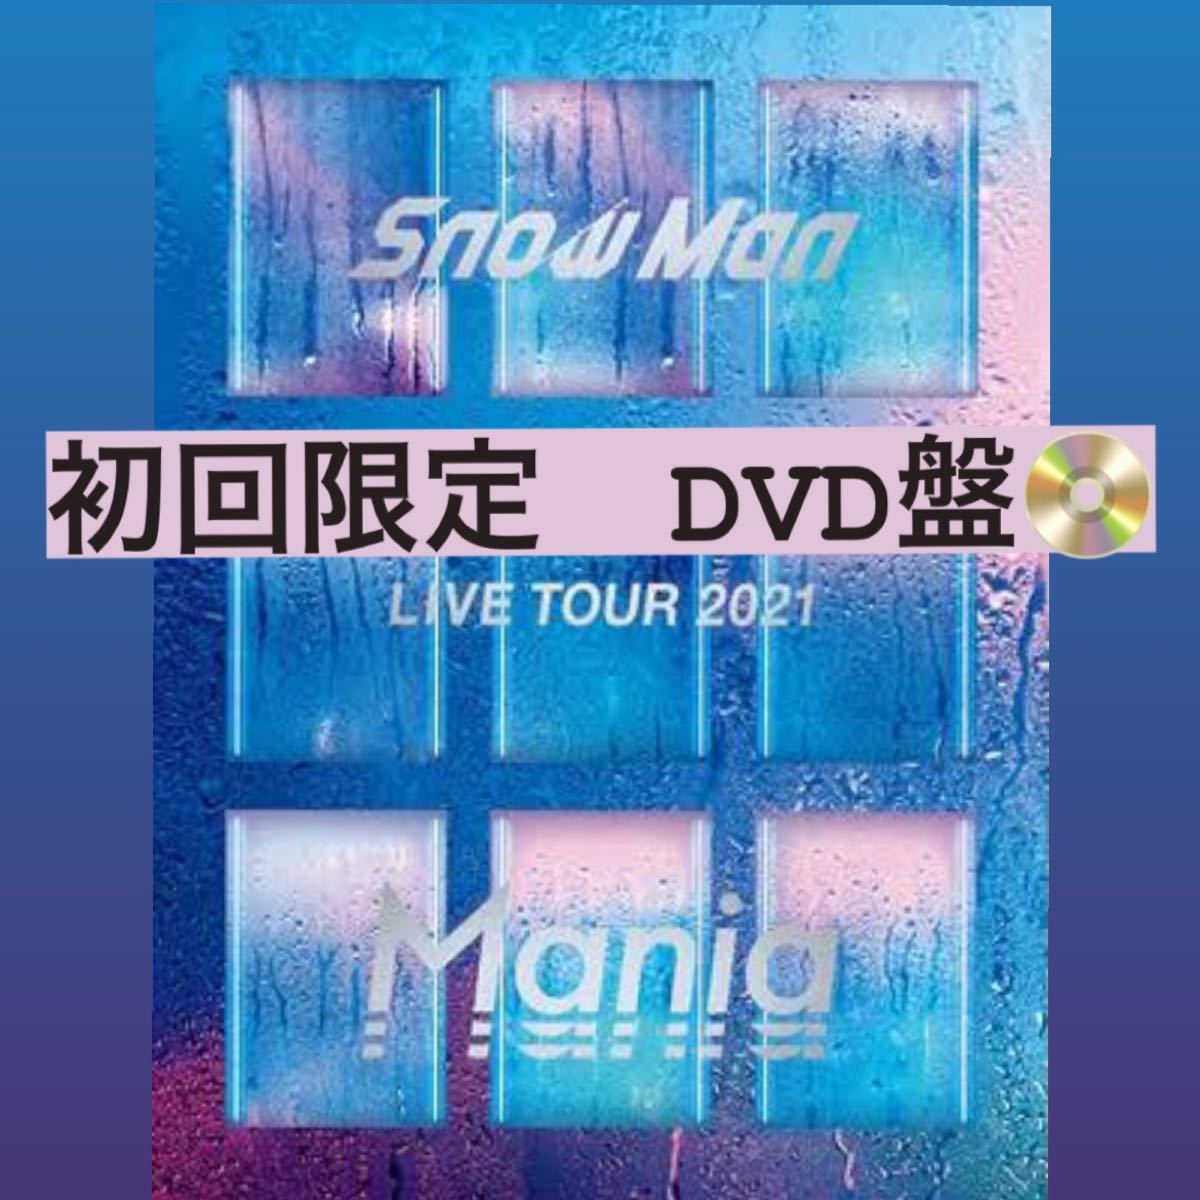 永遠の定番モデル Snow Man Live Tour Mania 2021 DVD 初回限定盤 eu